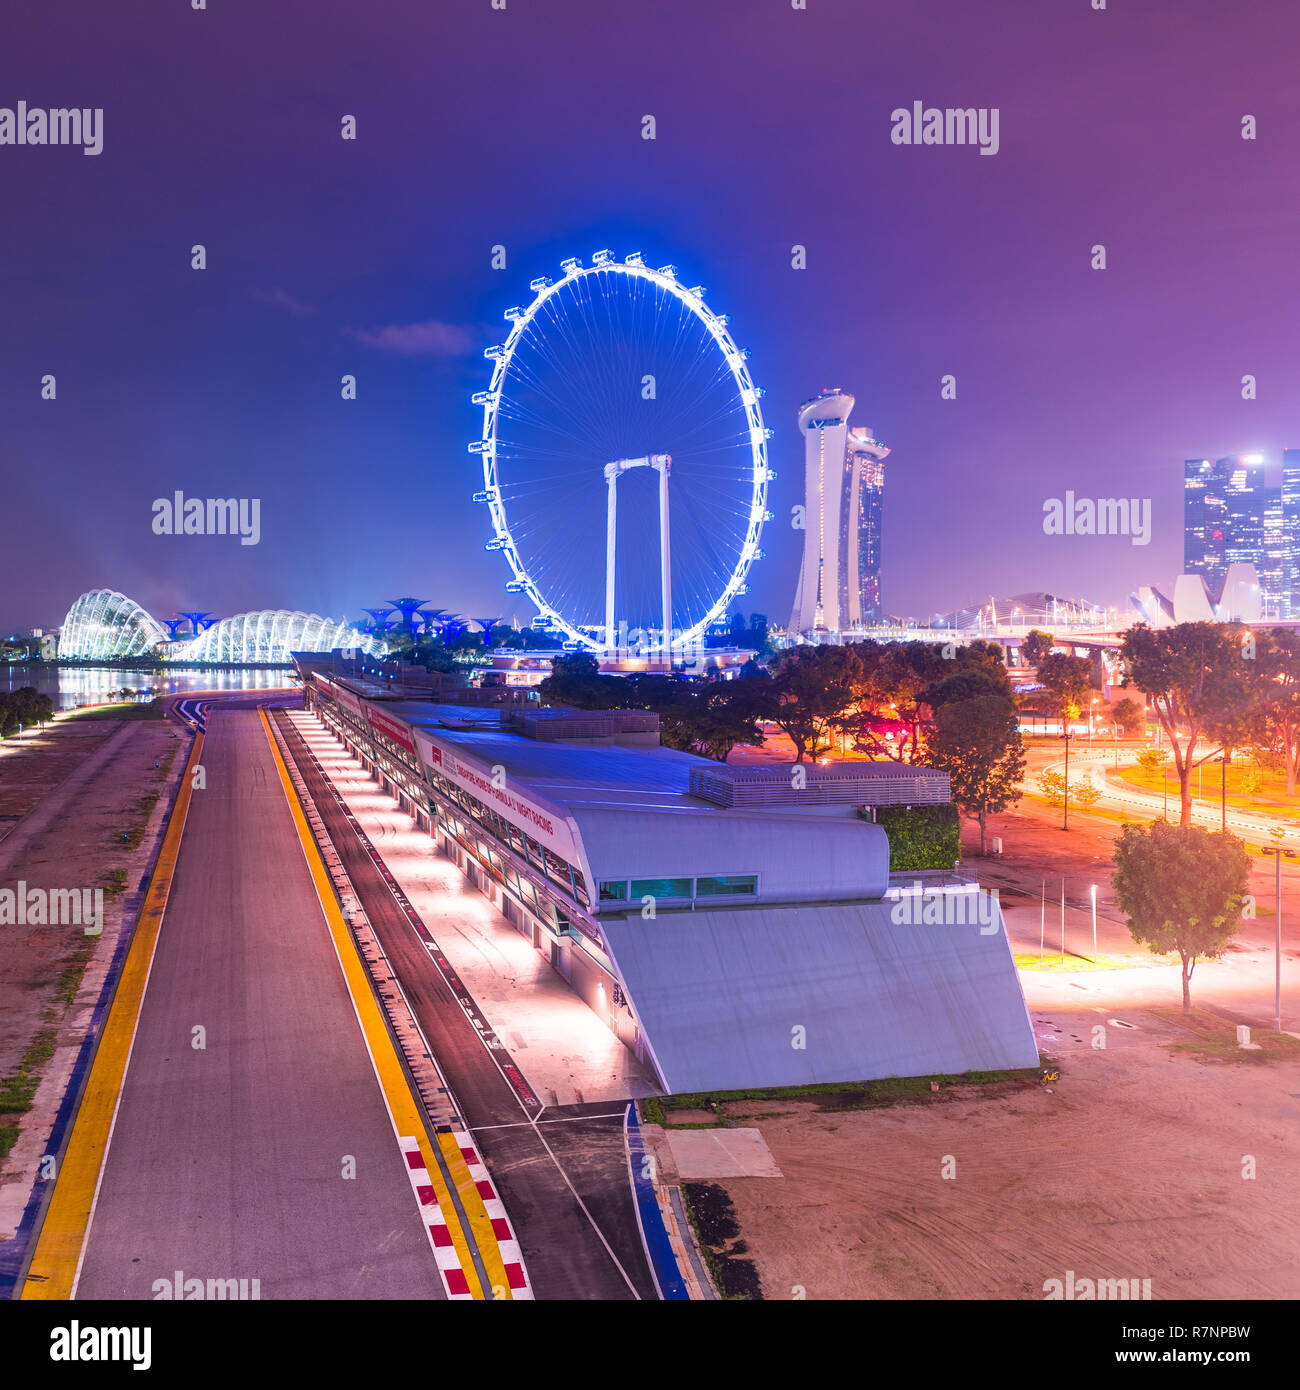 Singapur, 31. Okt. 2018: Eine Nacht viesw des Formel 1 Grand Prix von Singapur Stromkreis steht vor der Marina Bay und die Flyer Rad. Stockfoto